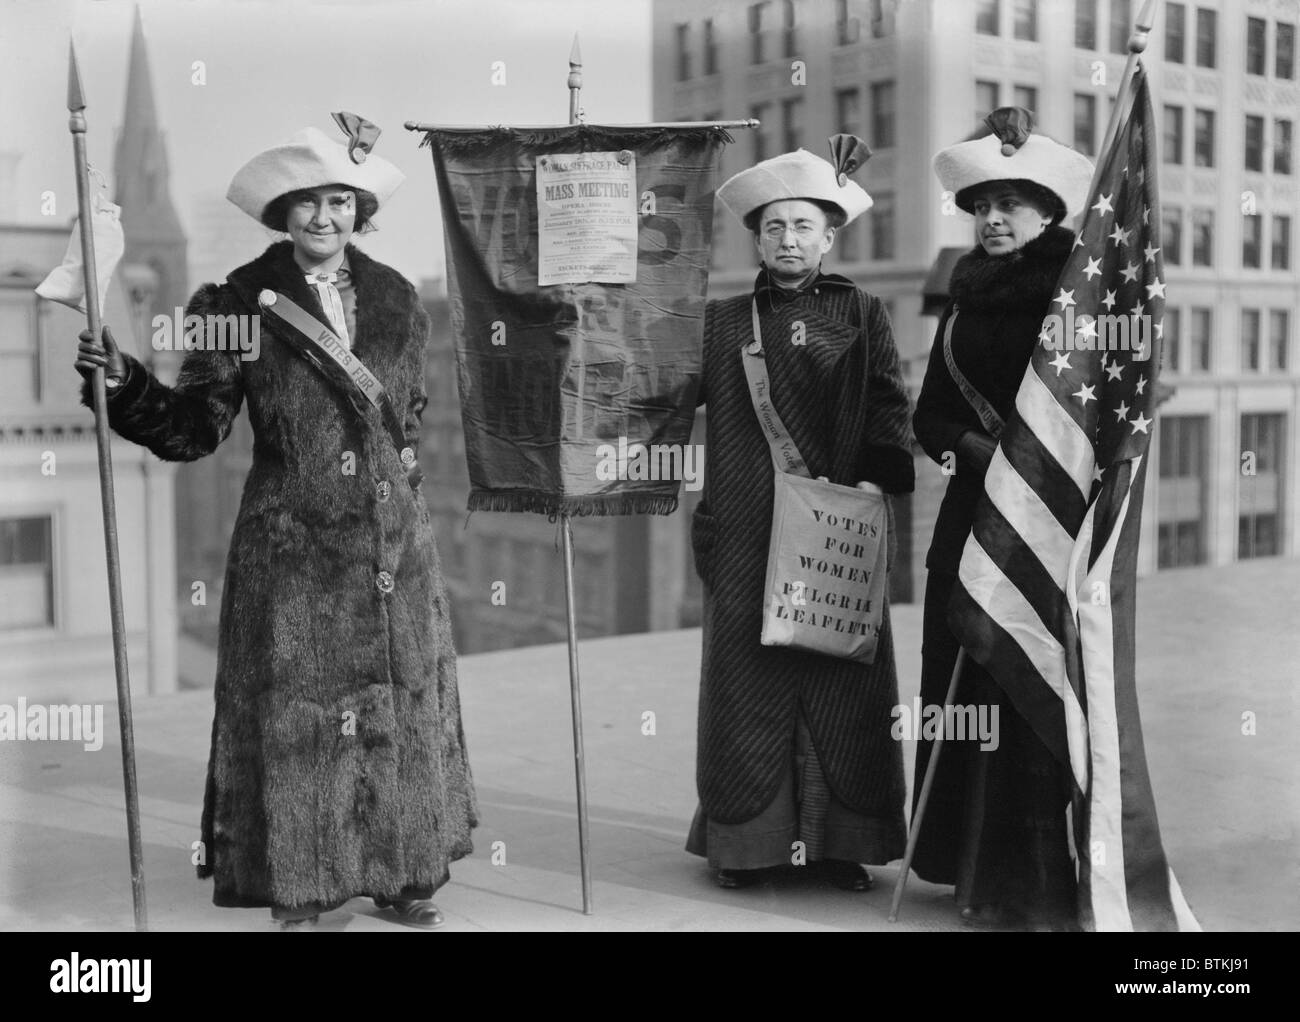 Drei Suffragetten demonstrieren in New York City zu fördern Wahlrecht Wandern 1912 von Manhattan nach Albany und ihre Stimmen für Frauen Pilger Flugblätter zu verteilen. Von links nach rechts: Frau J. Hardy Stubbs, Fräulein Ida Craft, Miss Roaslie Jones. Stockfoto